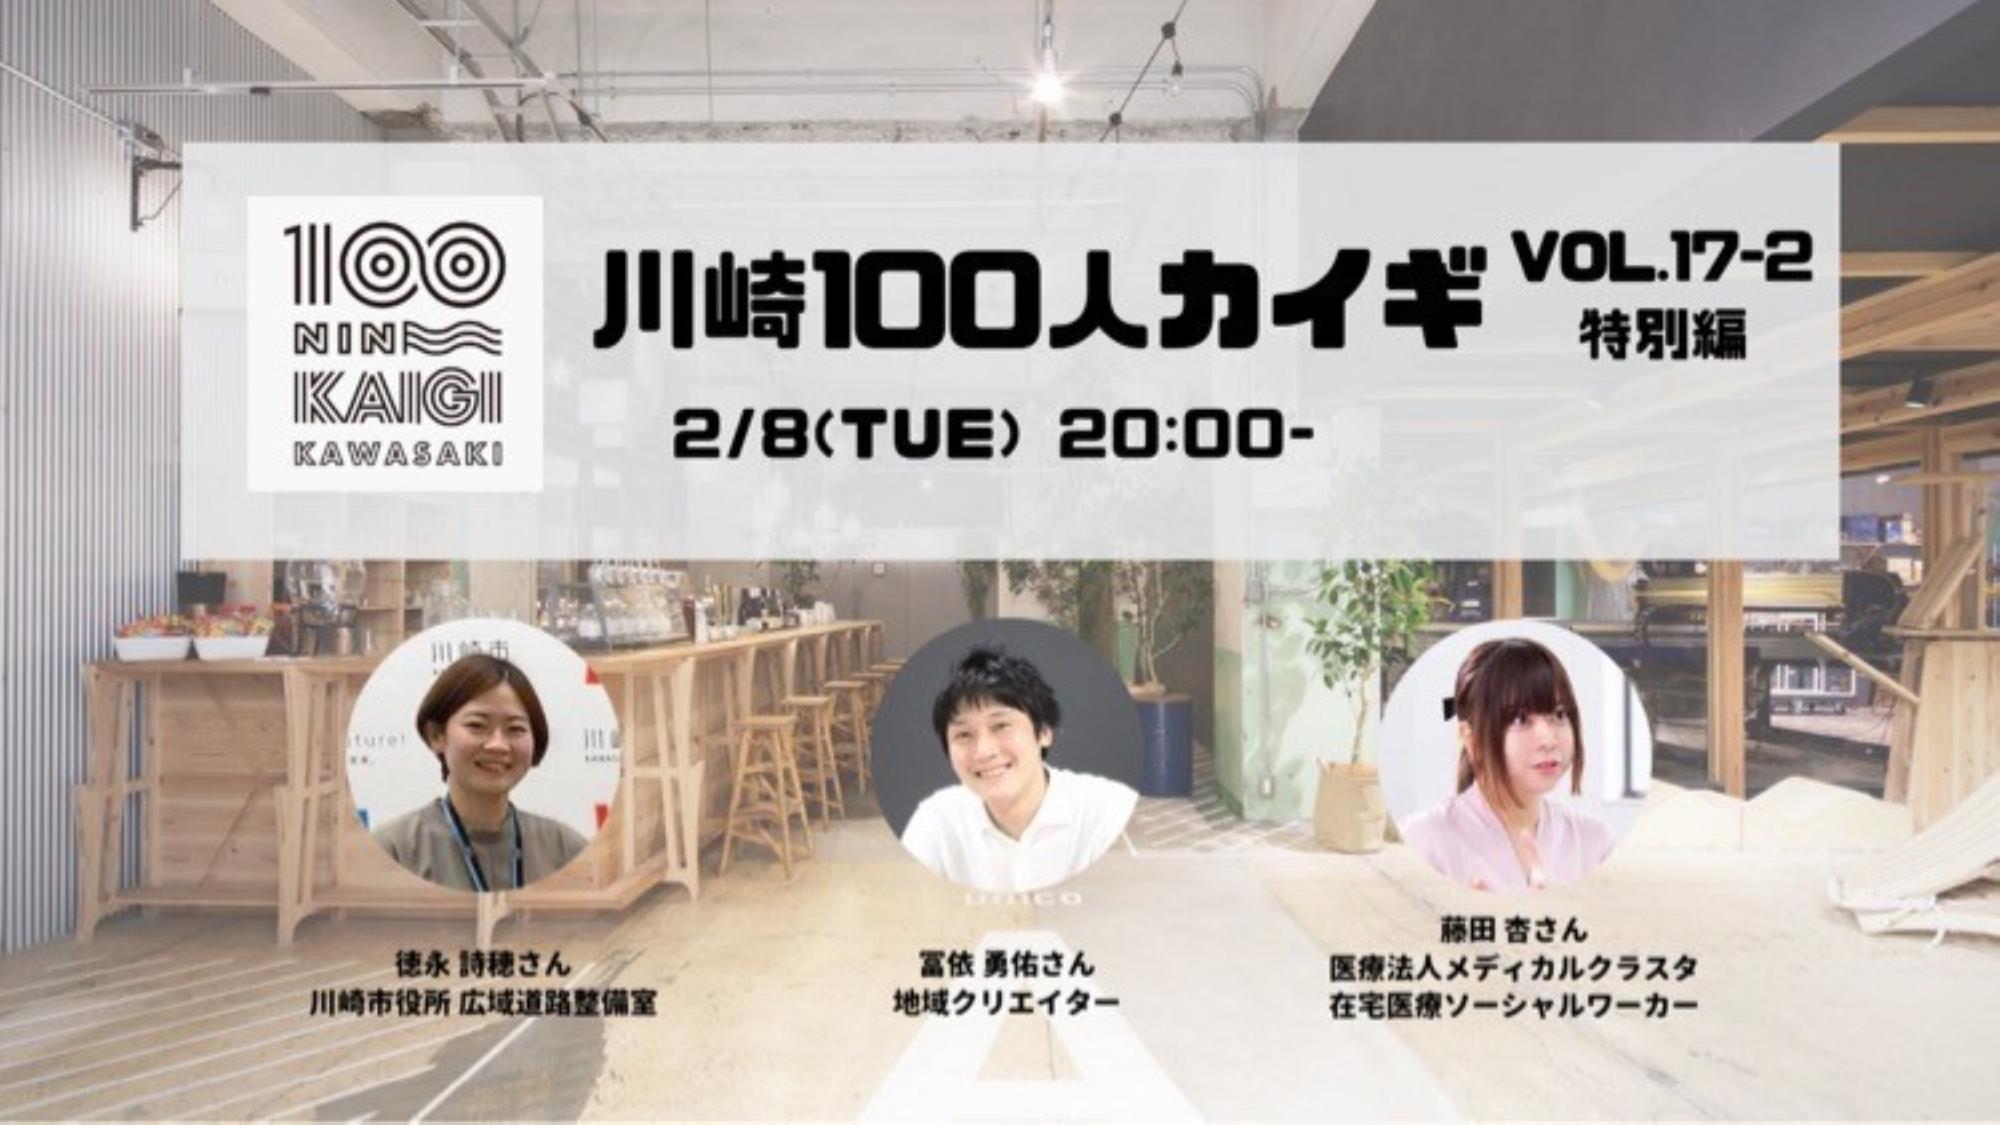 「『川崎100人カイギ』VOL.17-2」の登壇者ら。今回のテーマは「川崎の街や人を繋ぐ活動」。